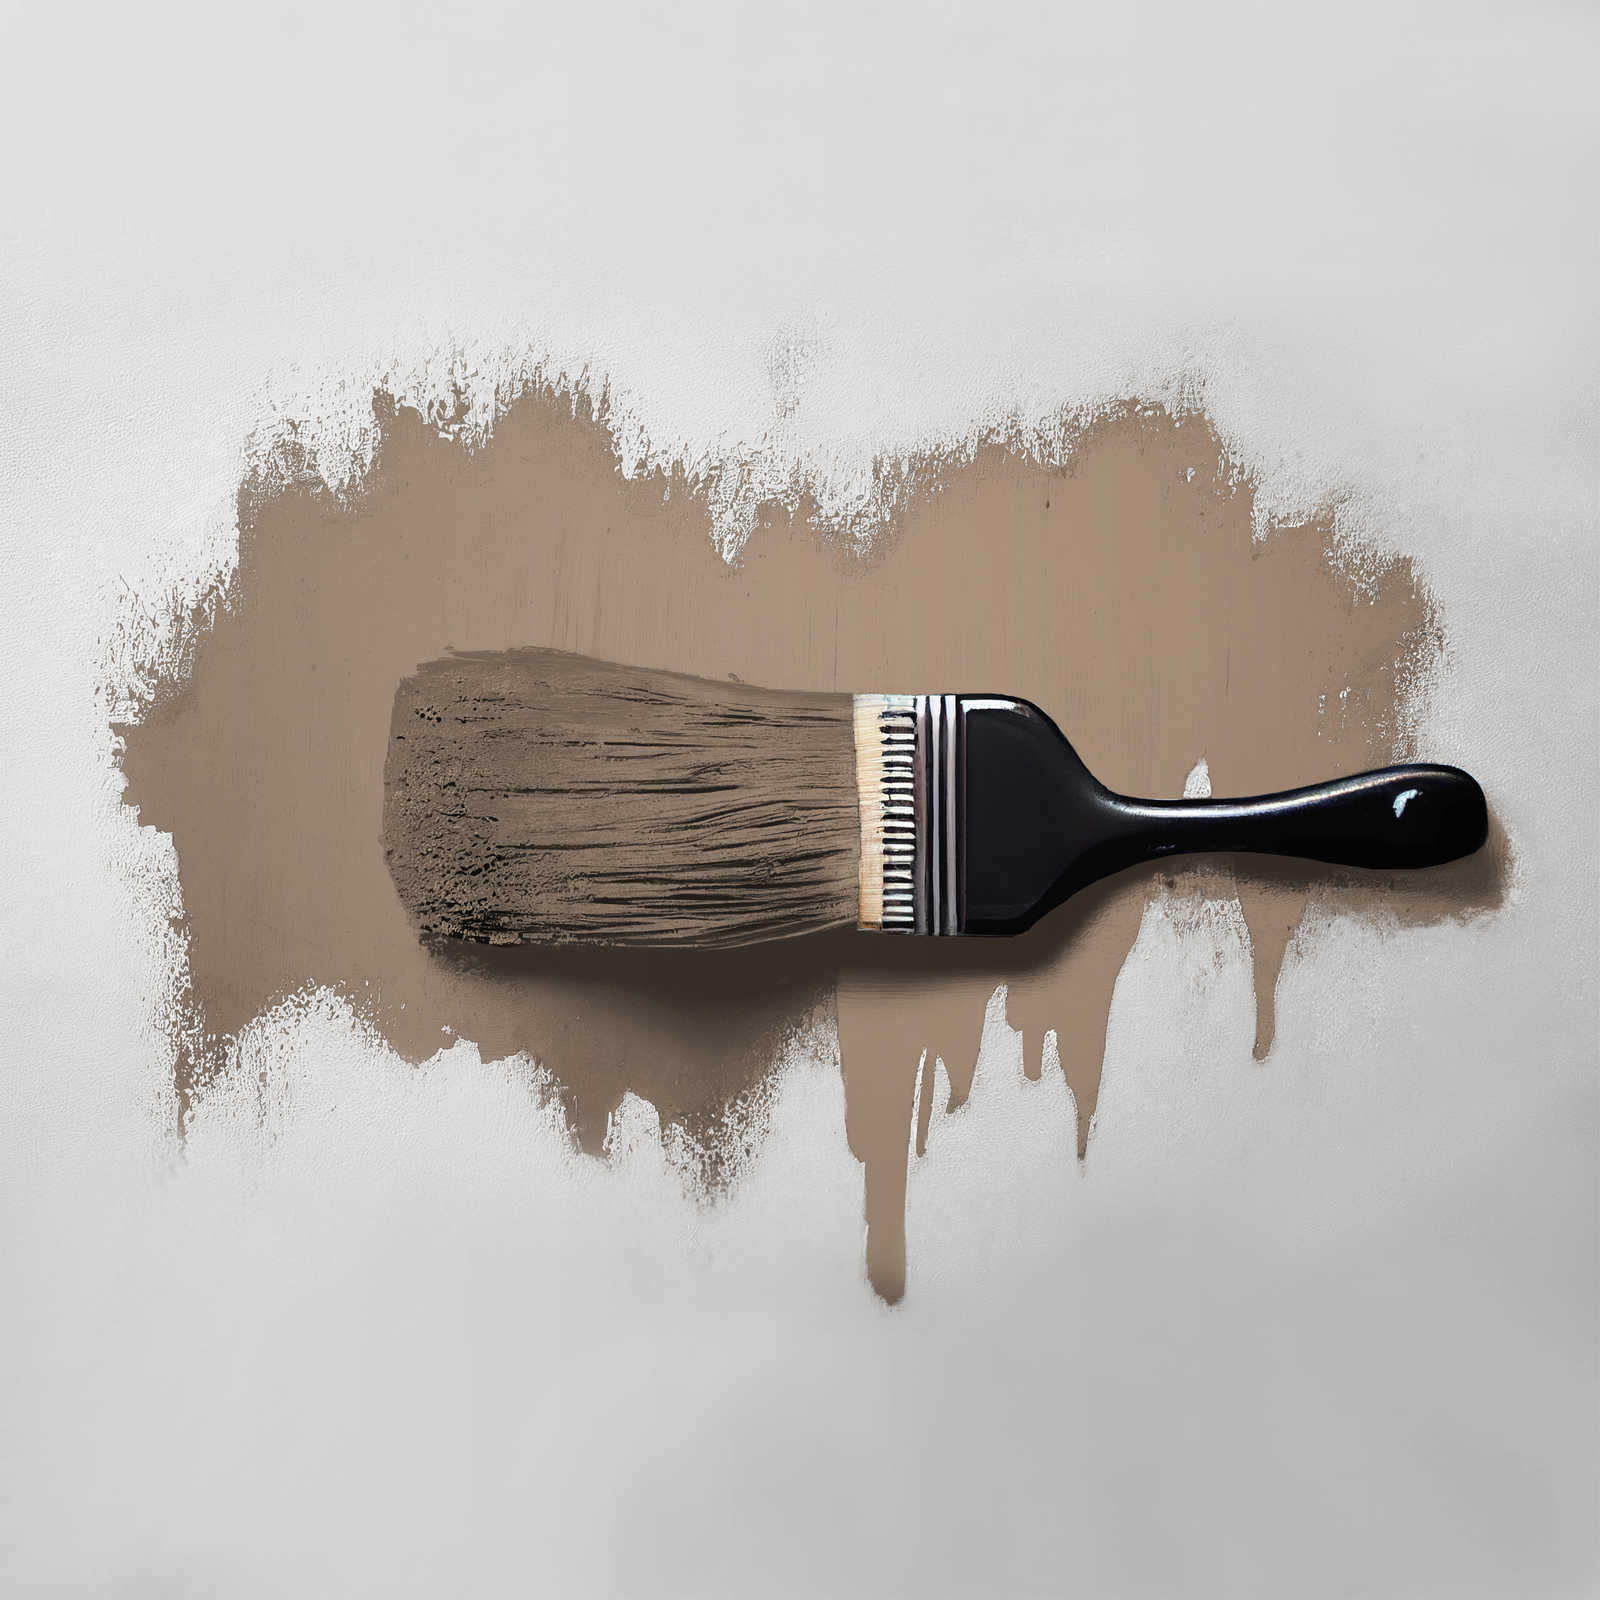             Pittura murale TCK6012 »Dynamic Date« in grigio casalingo – 5,0 litri
        